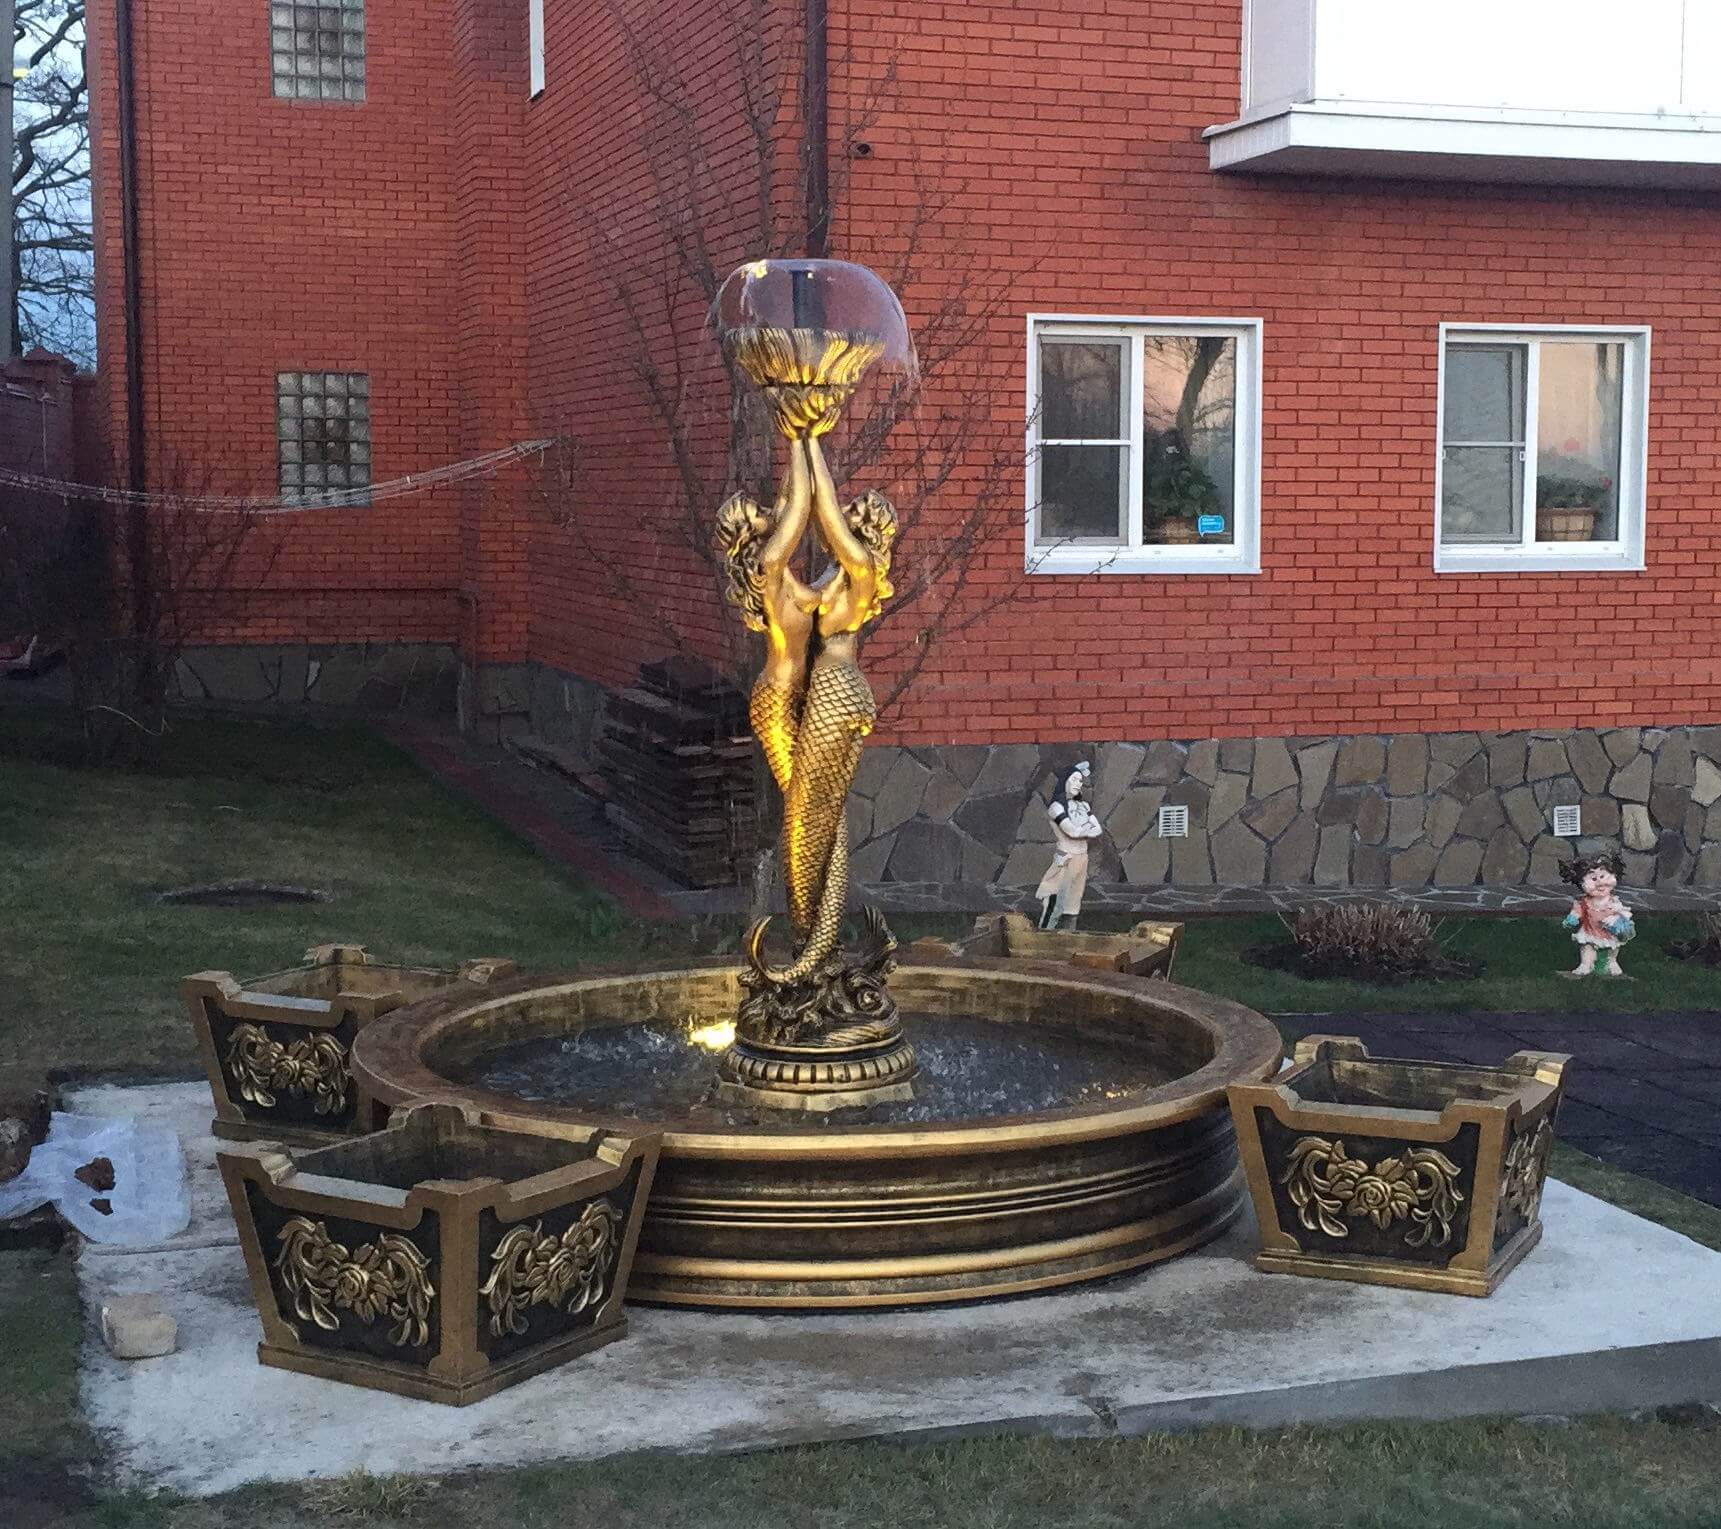 садовый фонтан на участке в бронзовом цвете у дома